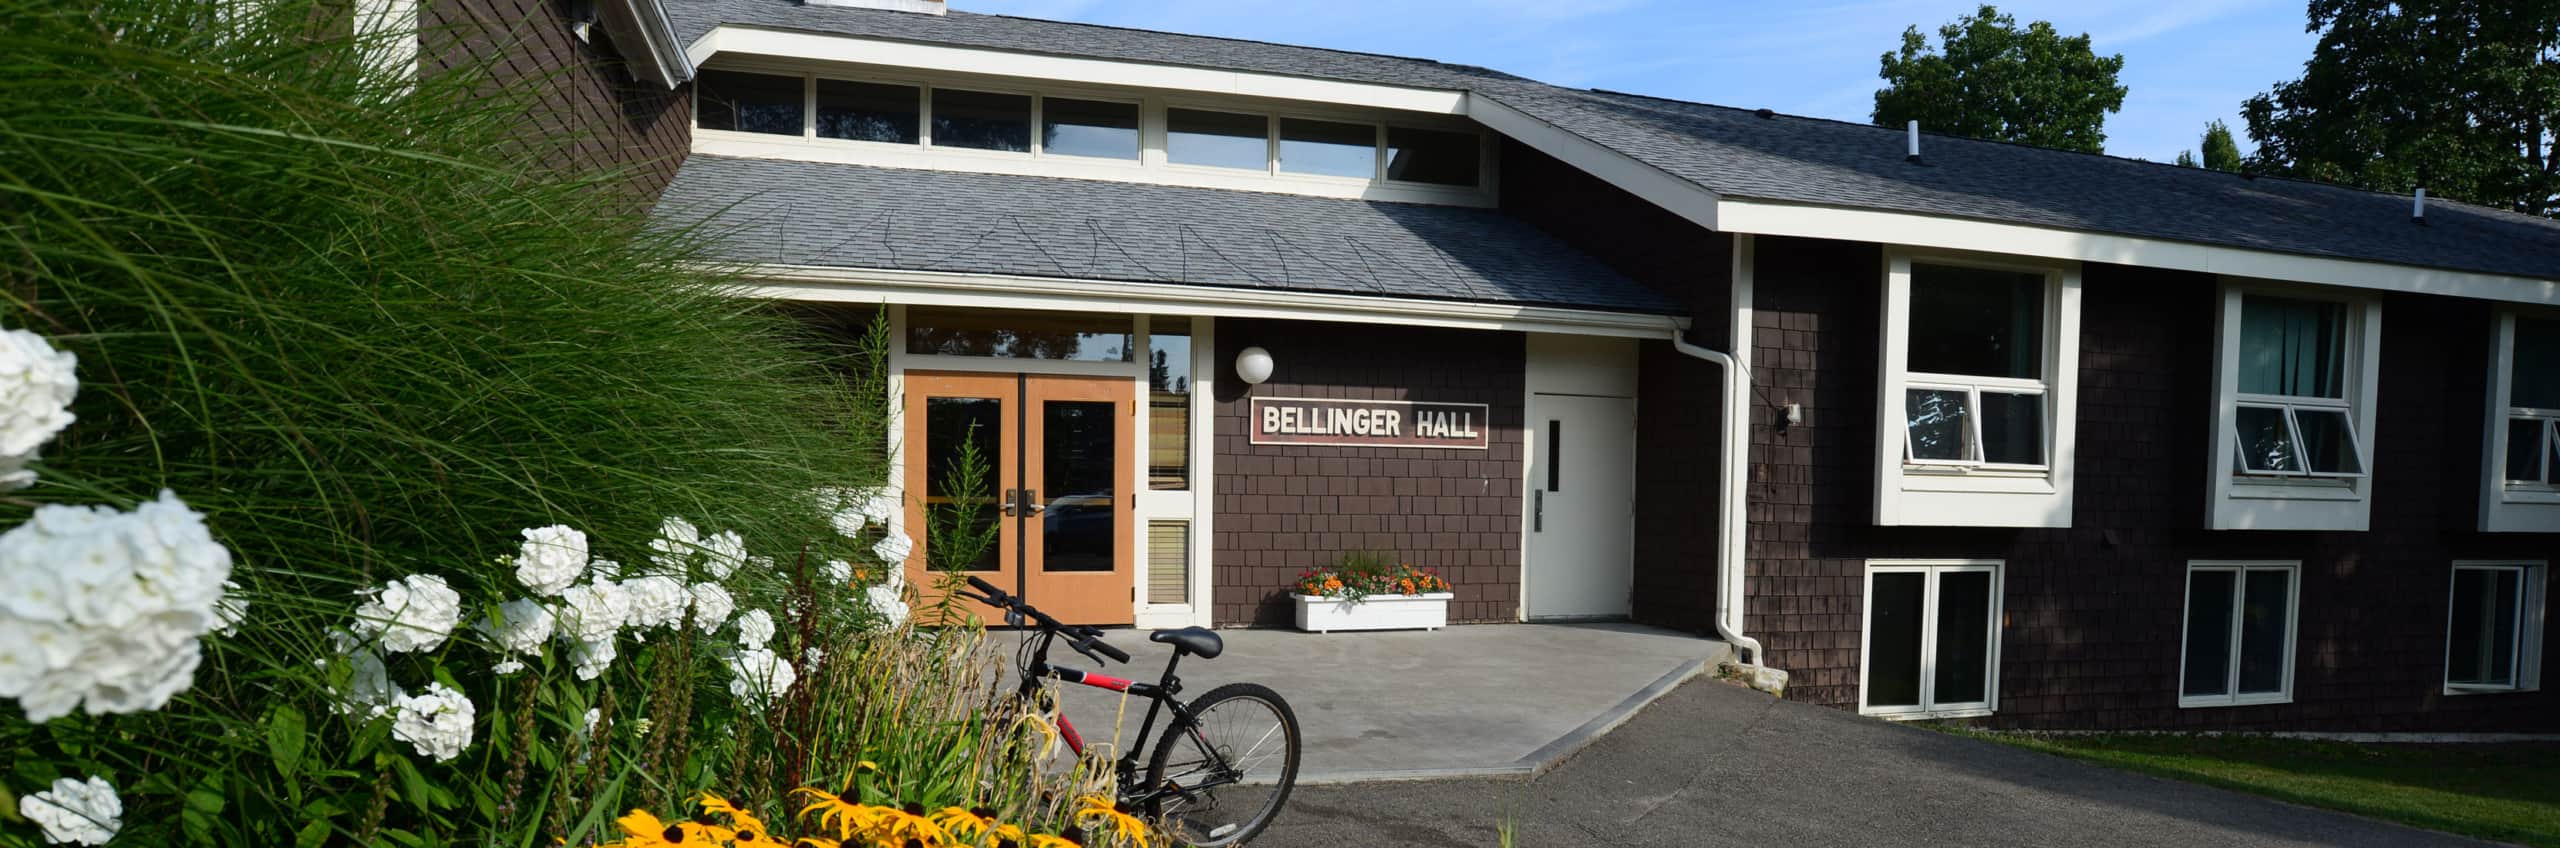 Bellinger Hall